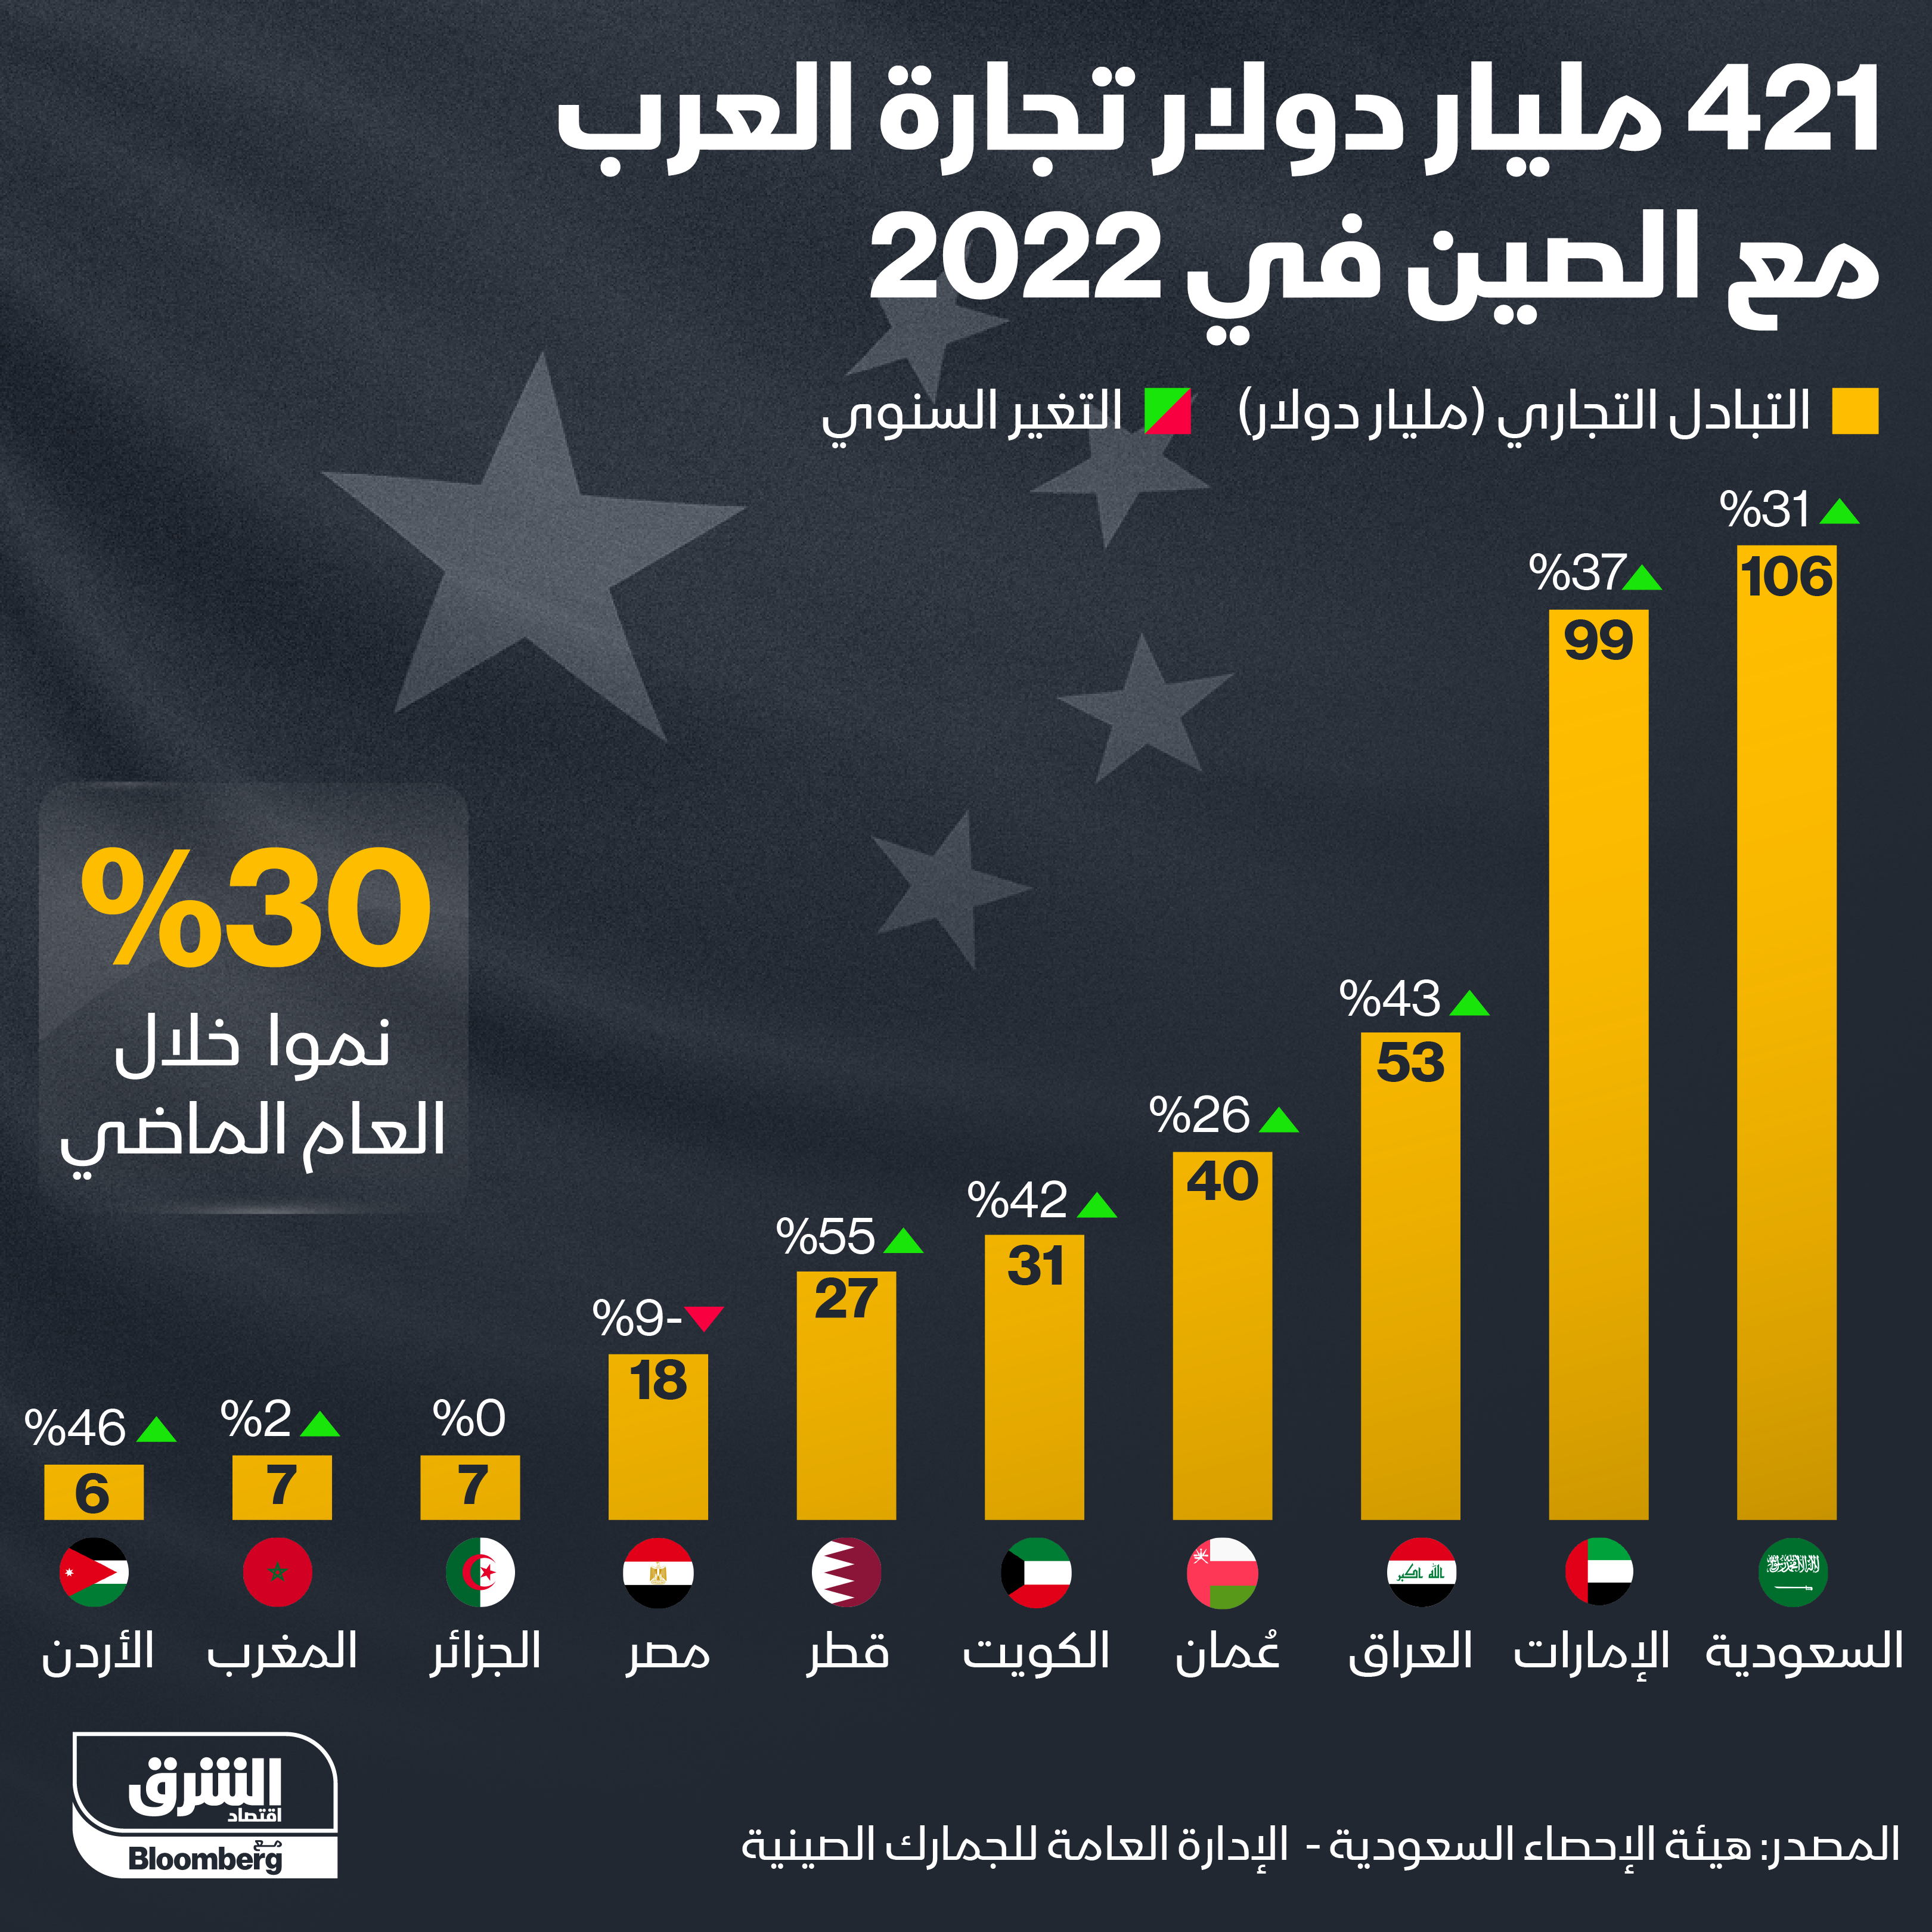 أكثر الدول العربية تجارةً مع الصين في عام 2022